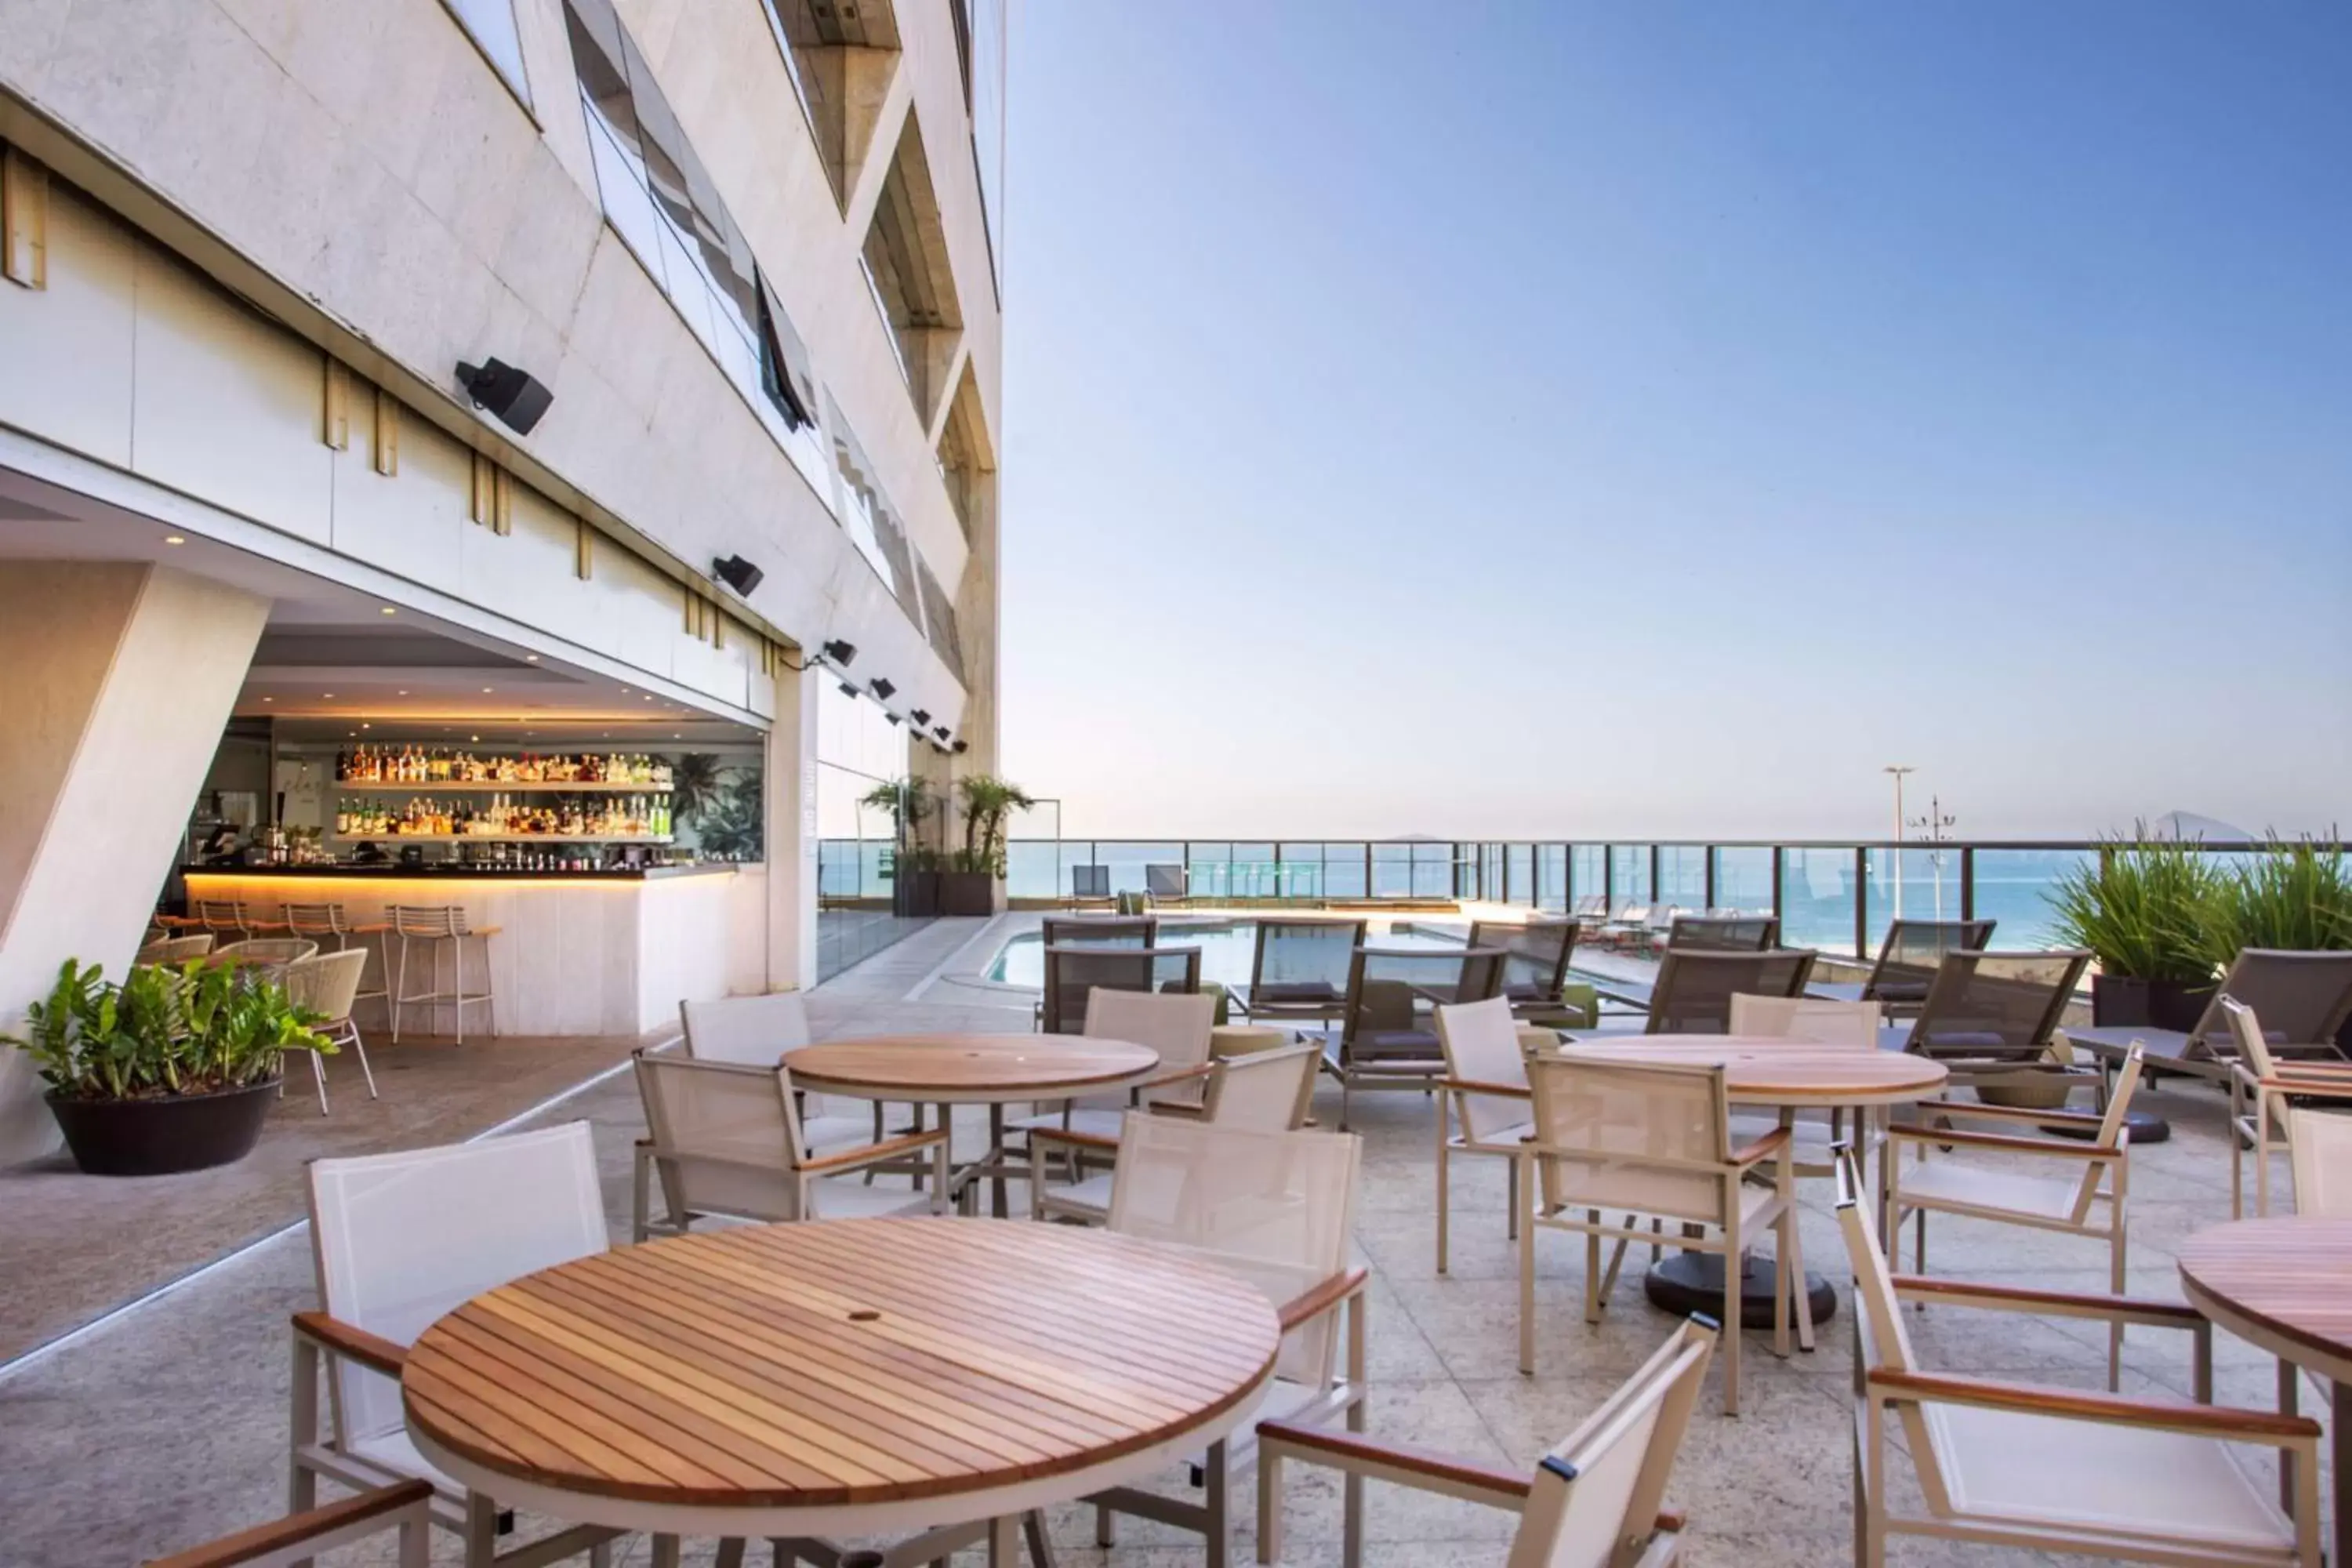 Lounge or bar, Restaurant/Places to Eat in Hilton Copacabana Rio de Janeiro